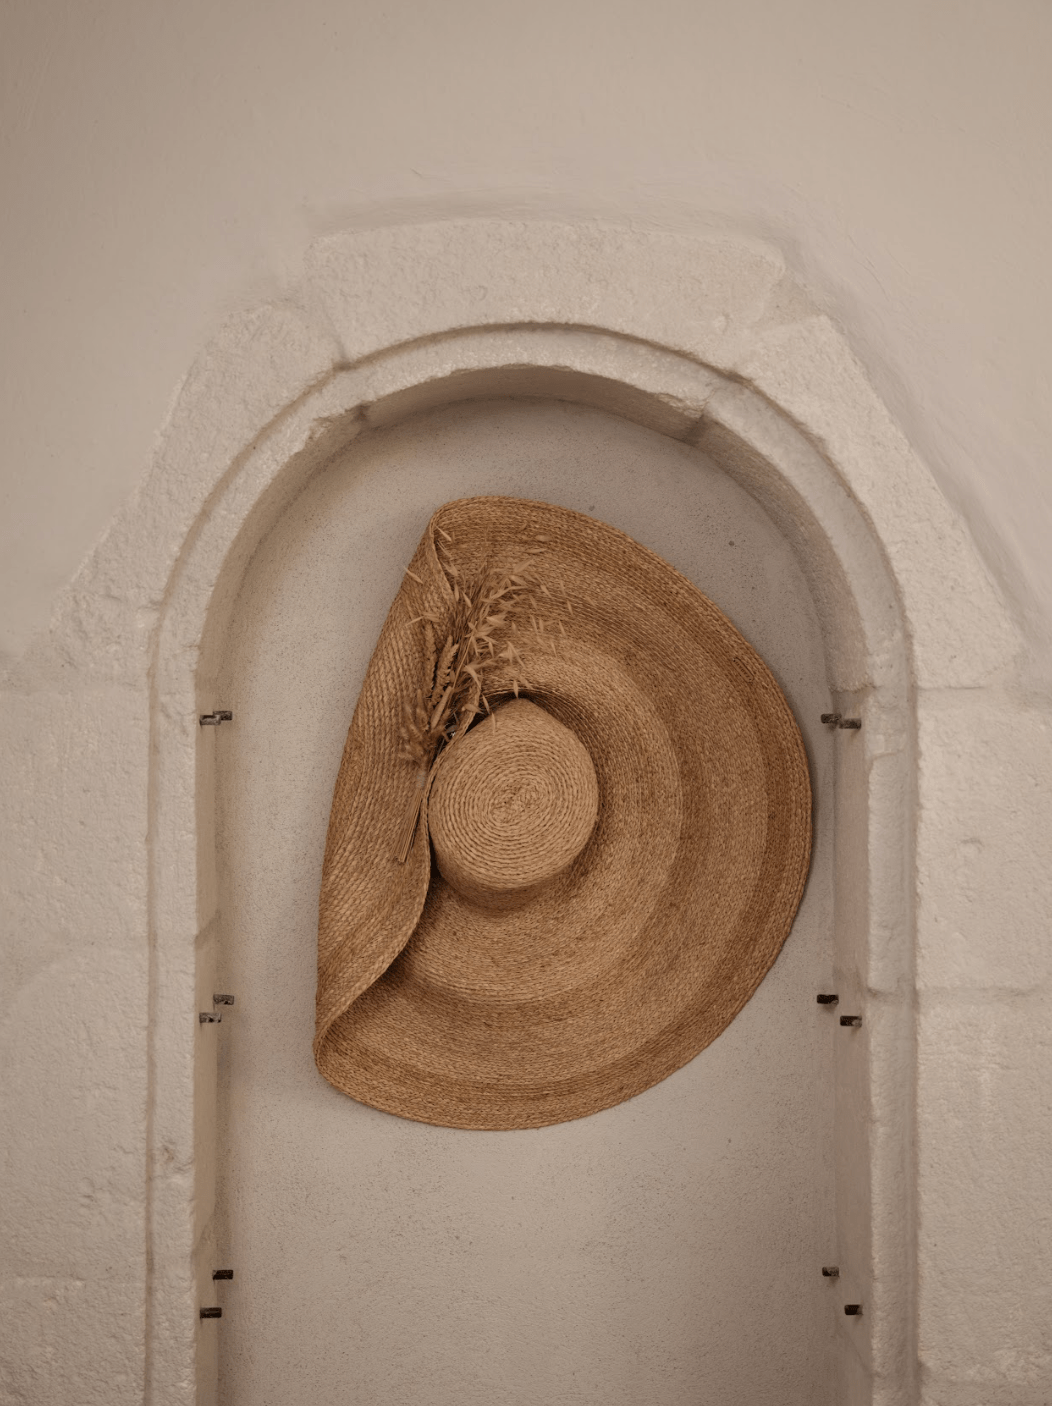 Chapeau de paille accroché sur un mur de pierres à la Maison des Remparts.